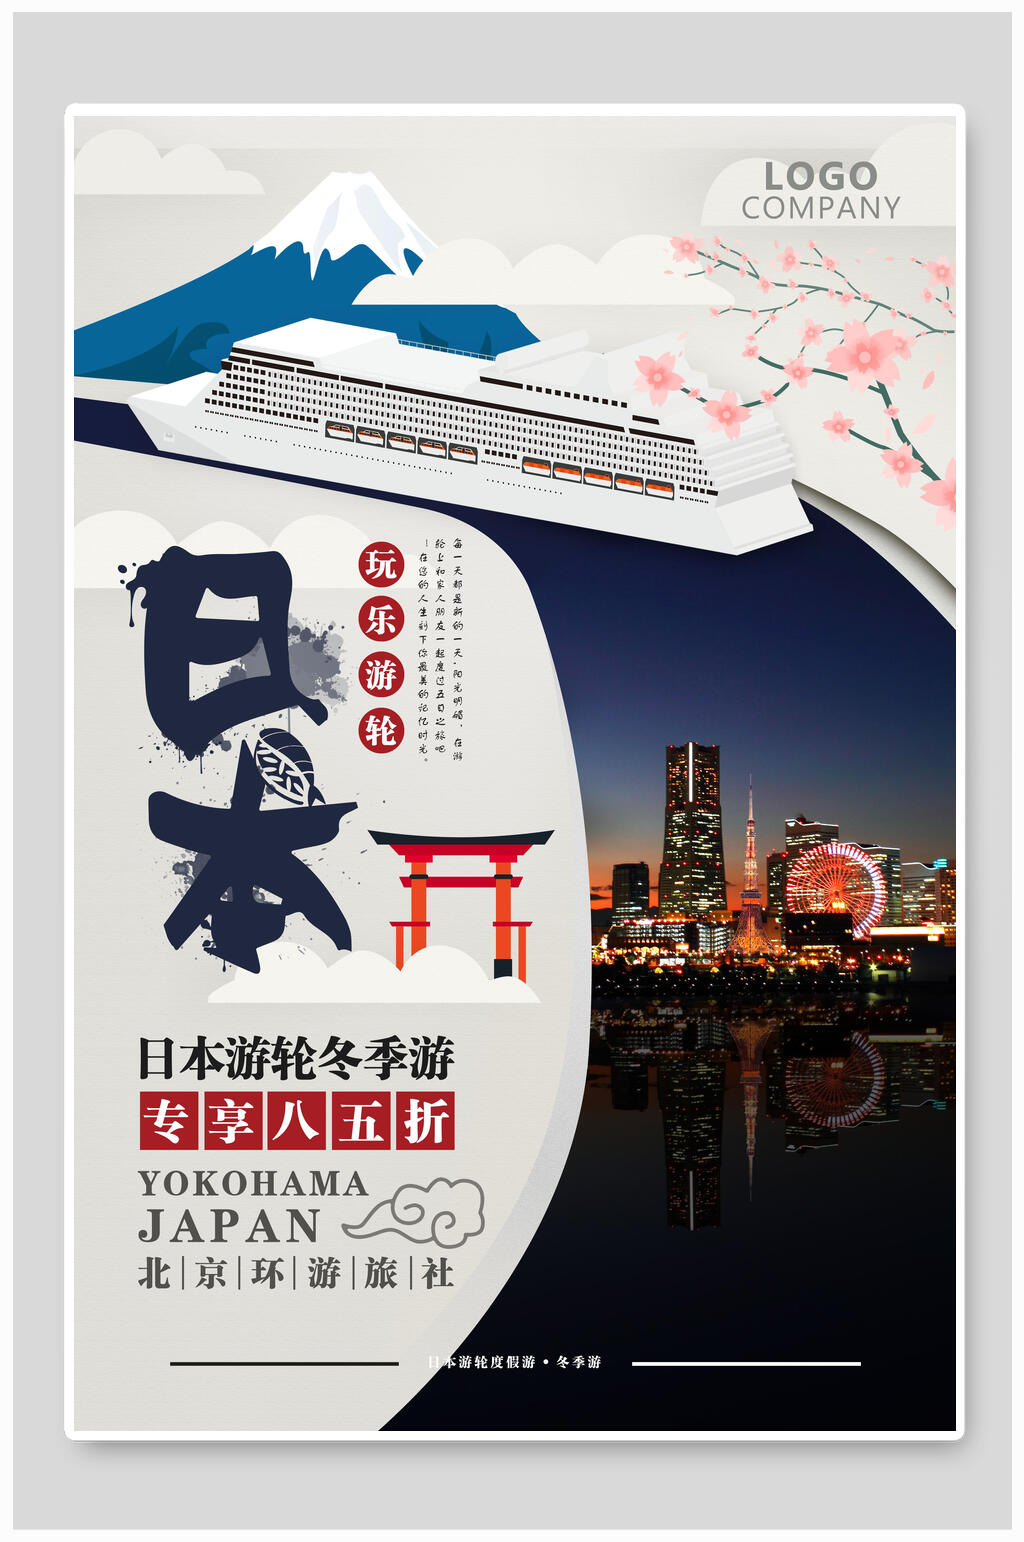 旅游徽标贴纸素材立即下载东京奥运会中国加油宣传海报立即下载东京